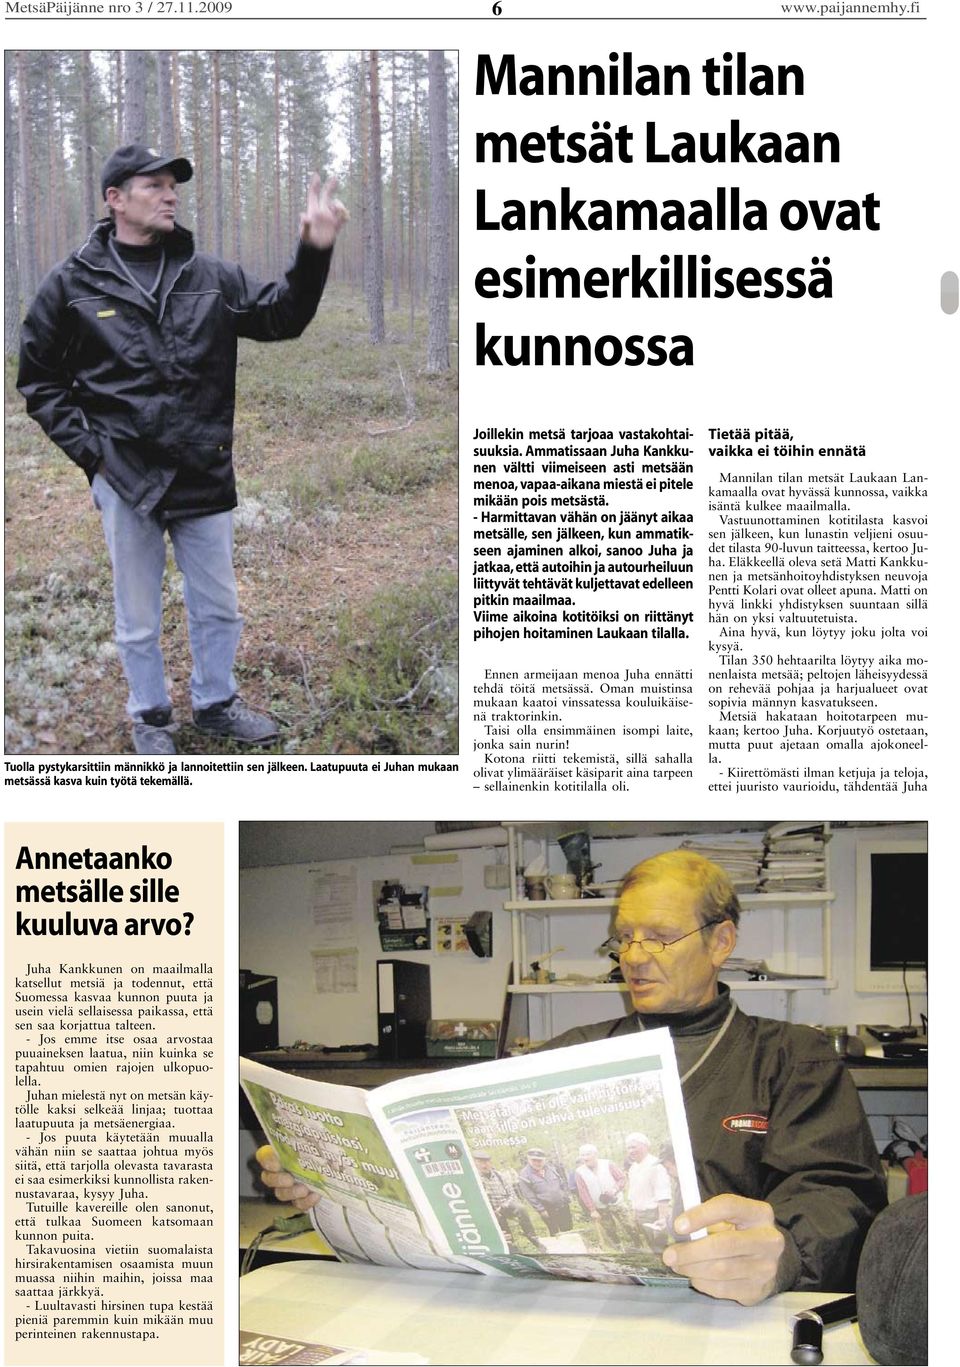 Ammatissaan Juha Kankkunen vältti viimeiseen asti metsään menoa, vapaa-aikana miestä ei pitele mikään pois metsästä.